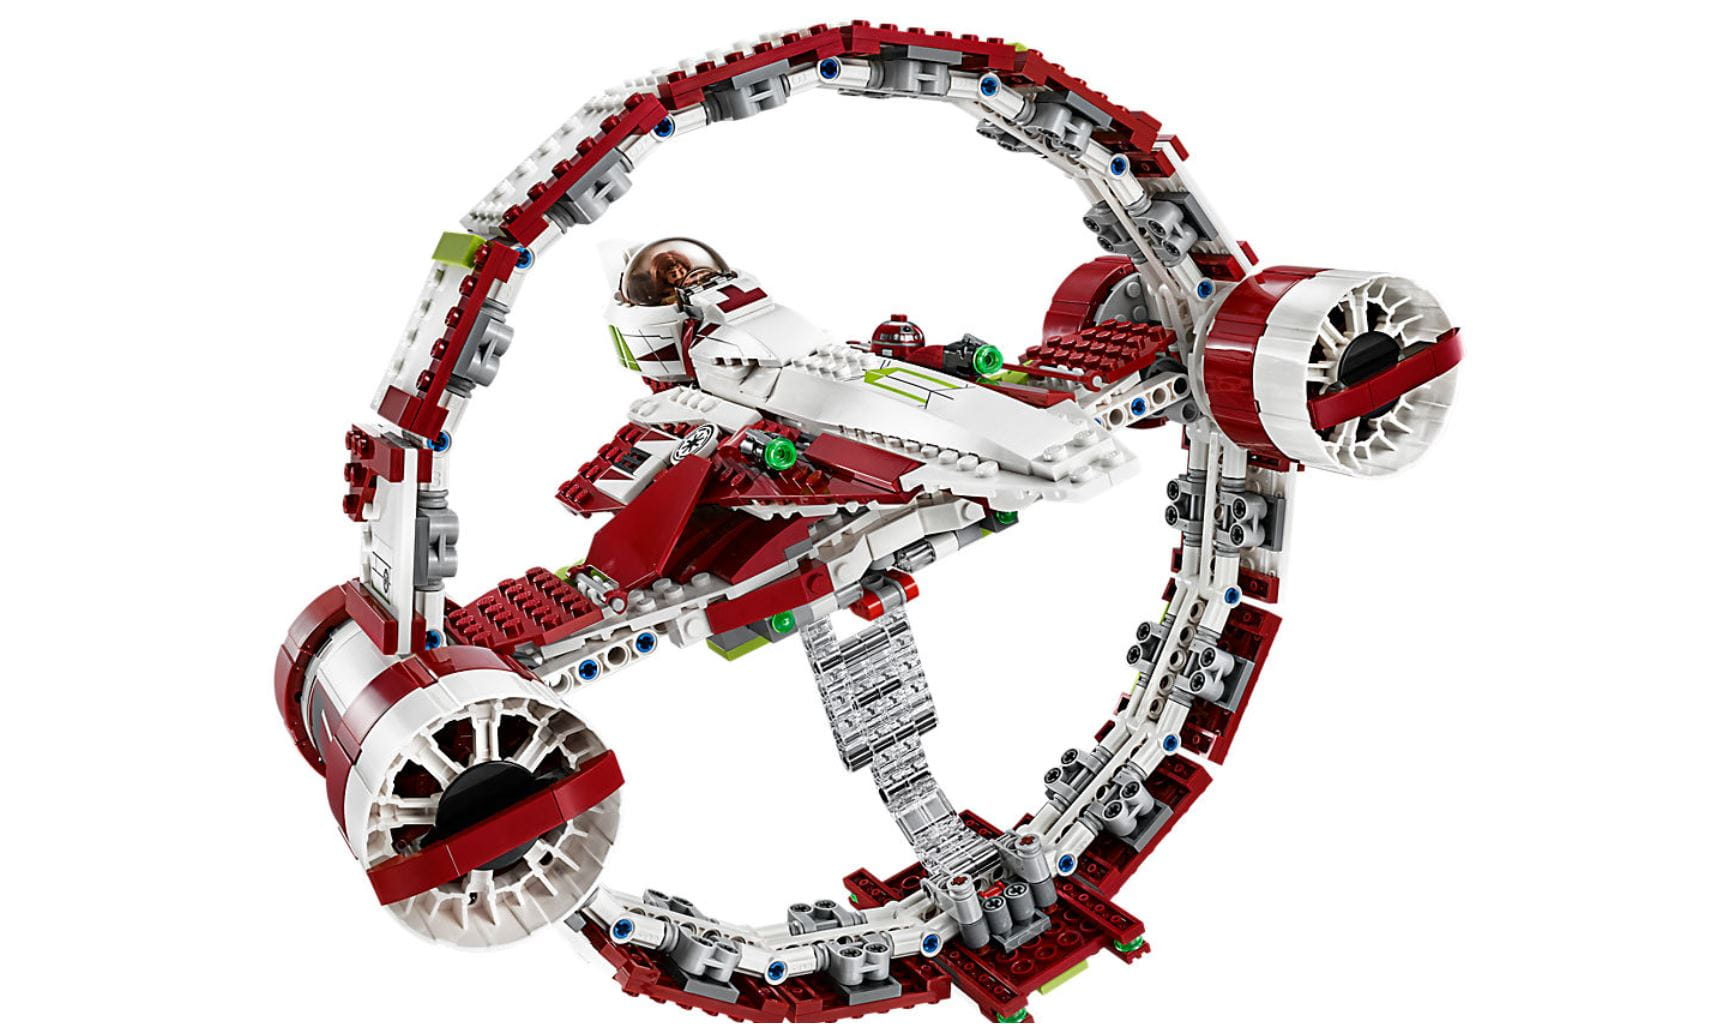 LEGO Star Wars Exklusiv Artikel Jedi Starfighter™ With Hyperdrive